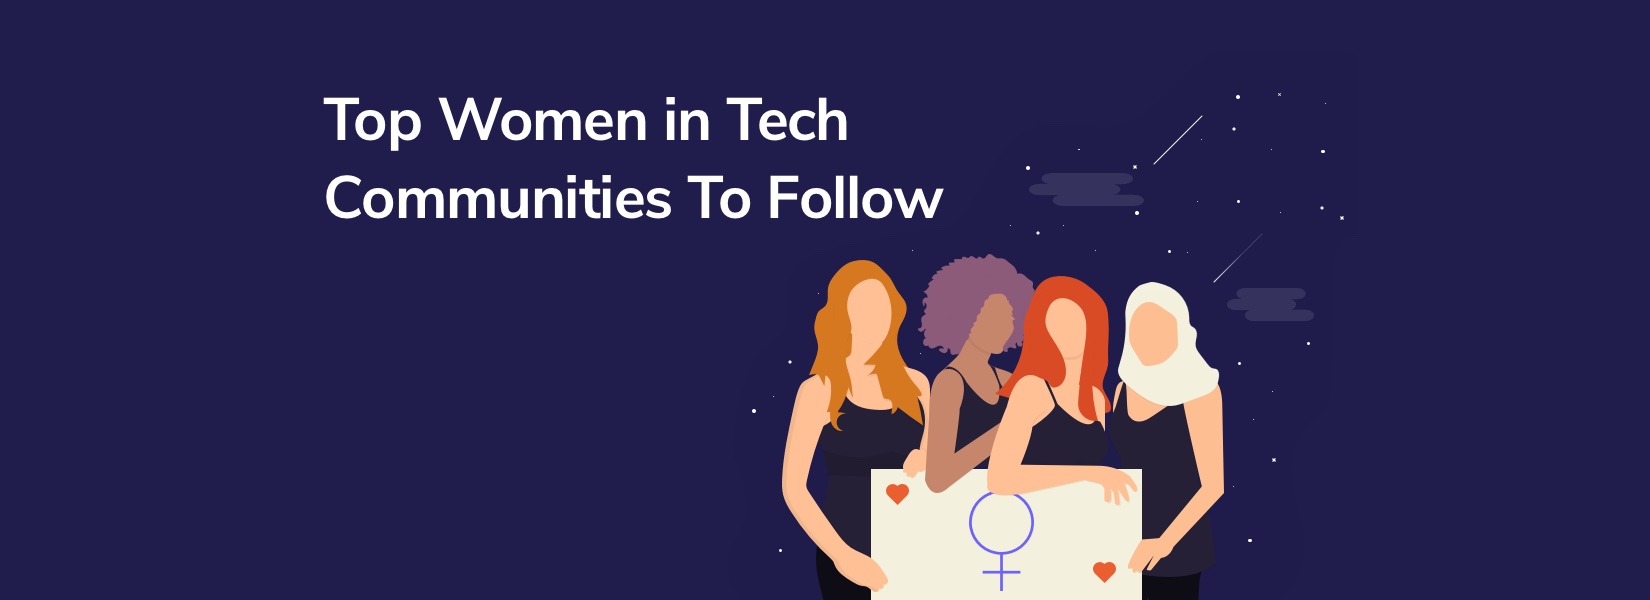 Top Women in Tech Communities To Follow